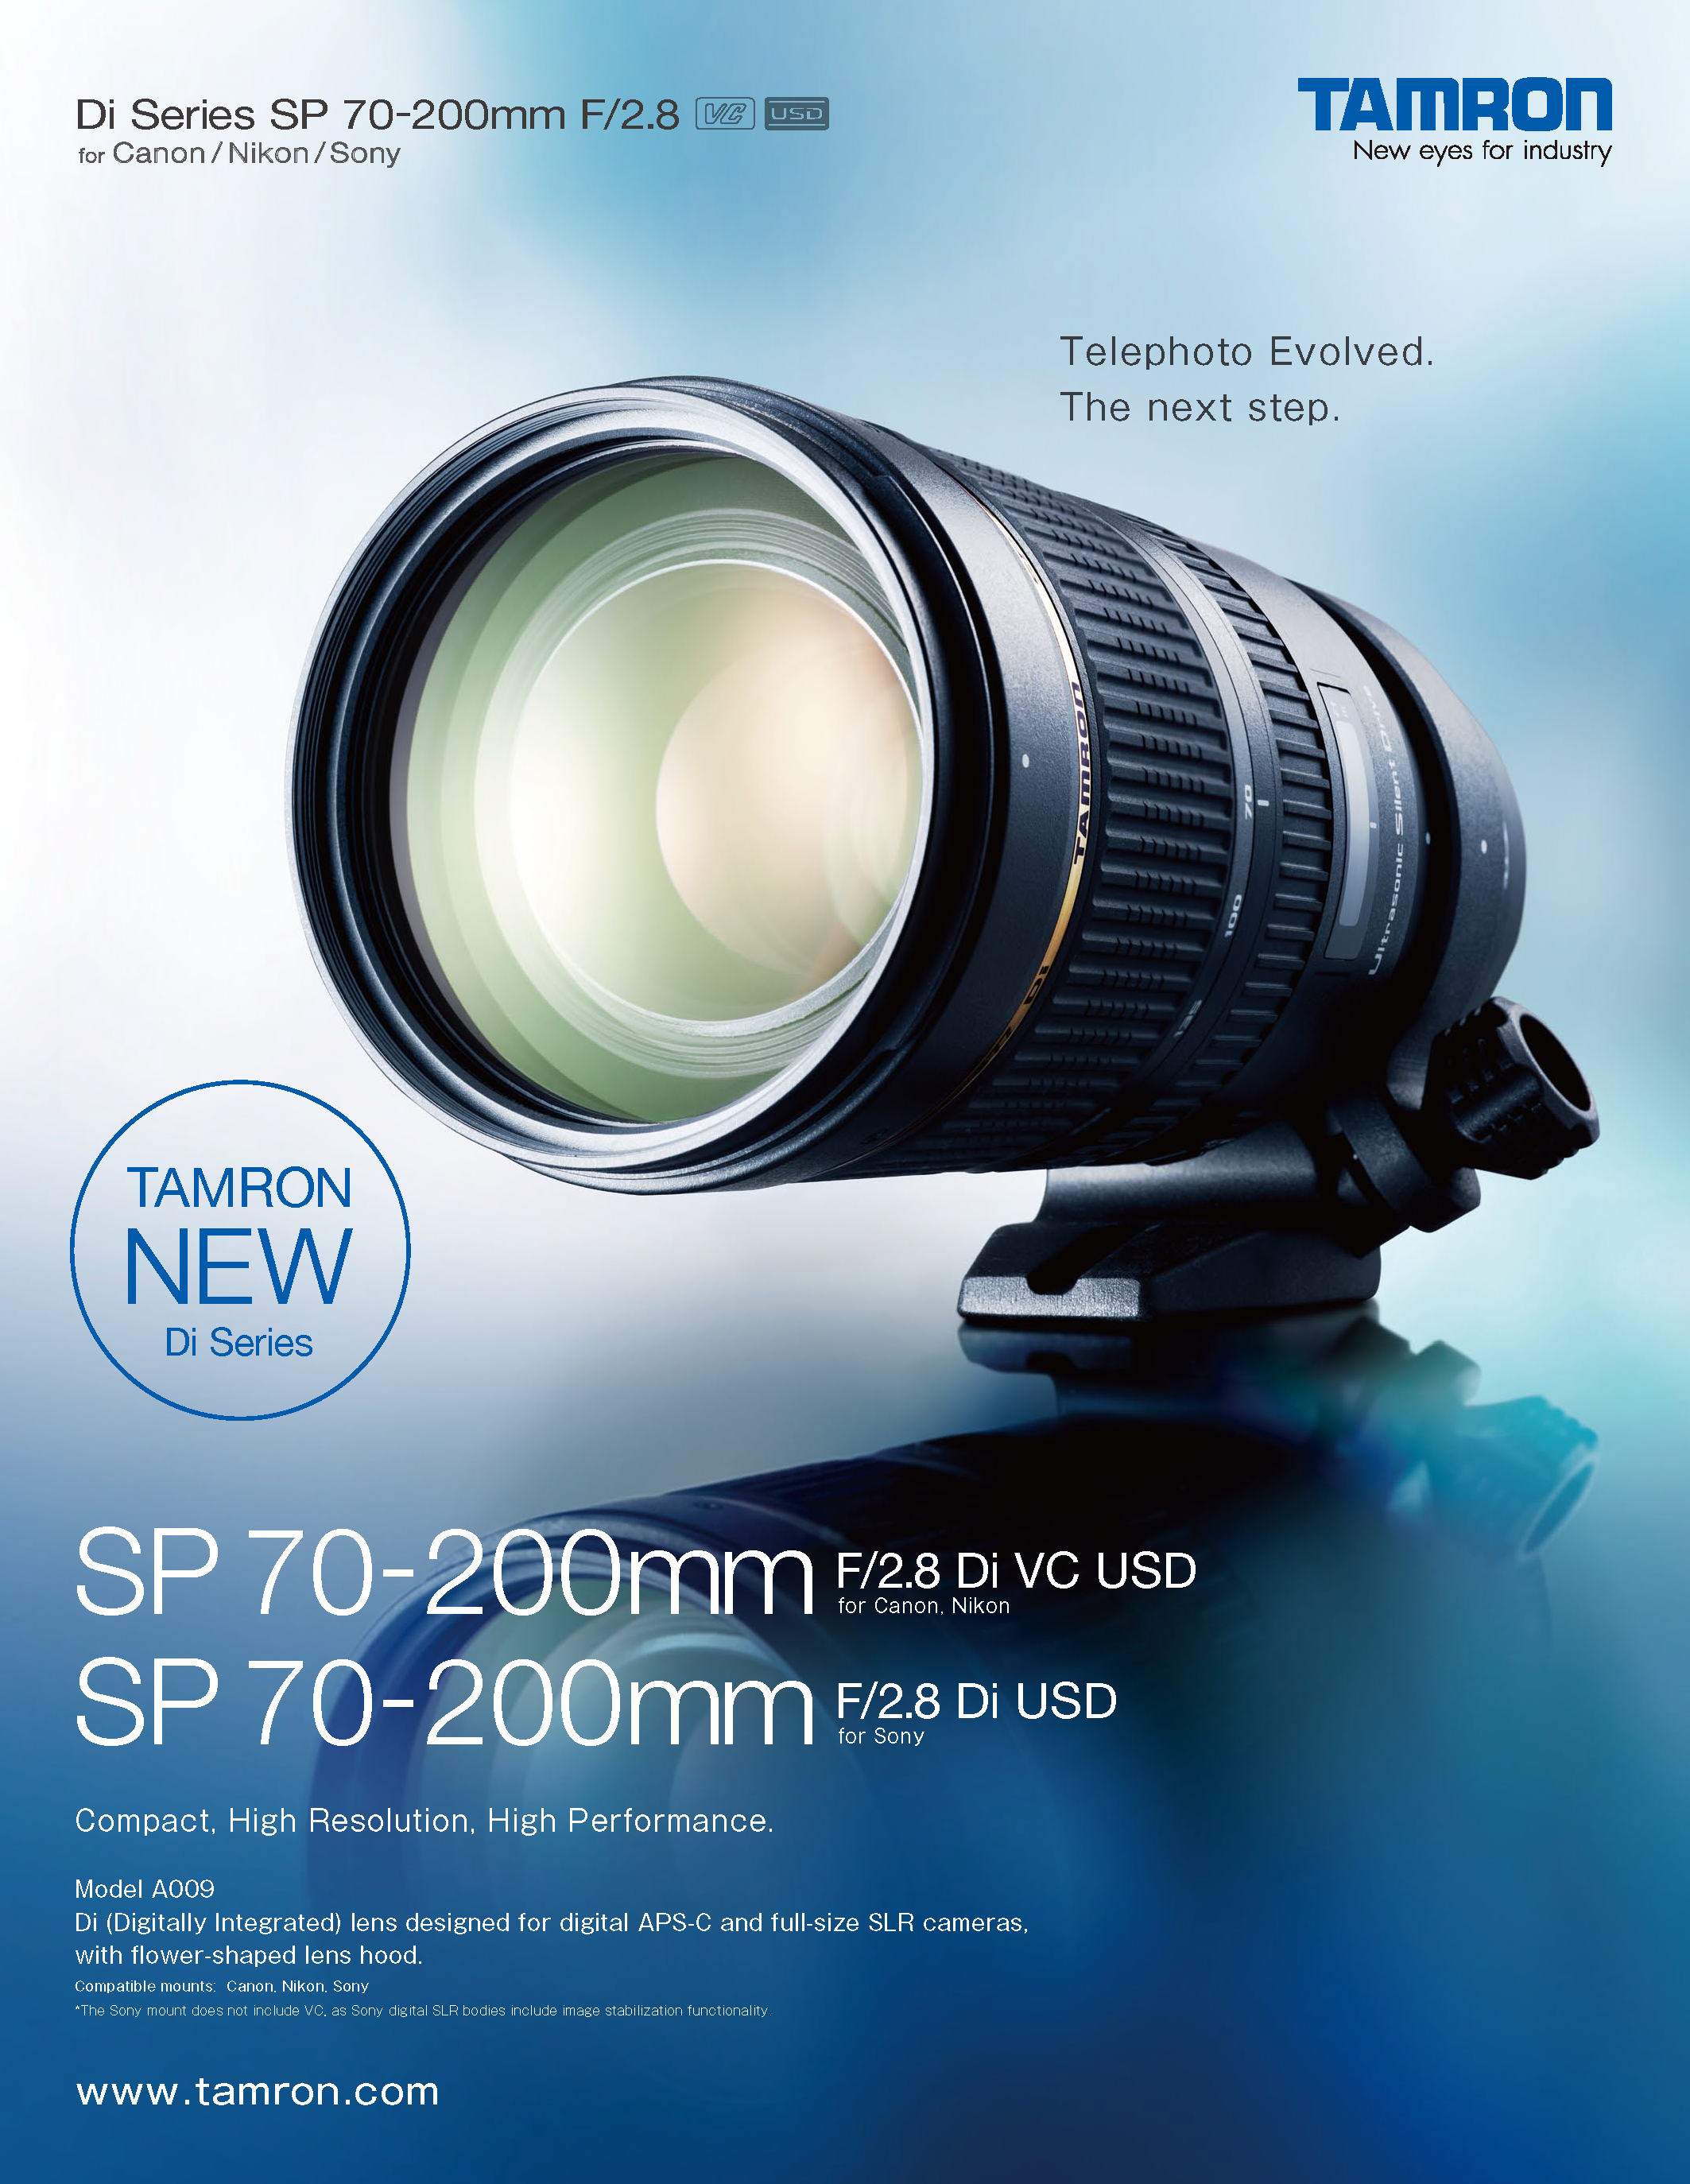 SP 70-200mm F/2.8 Di VC USD